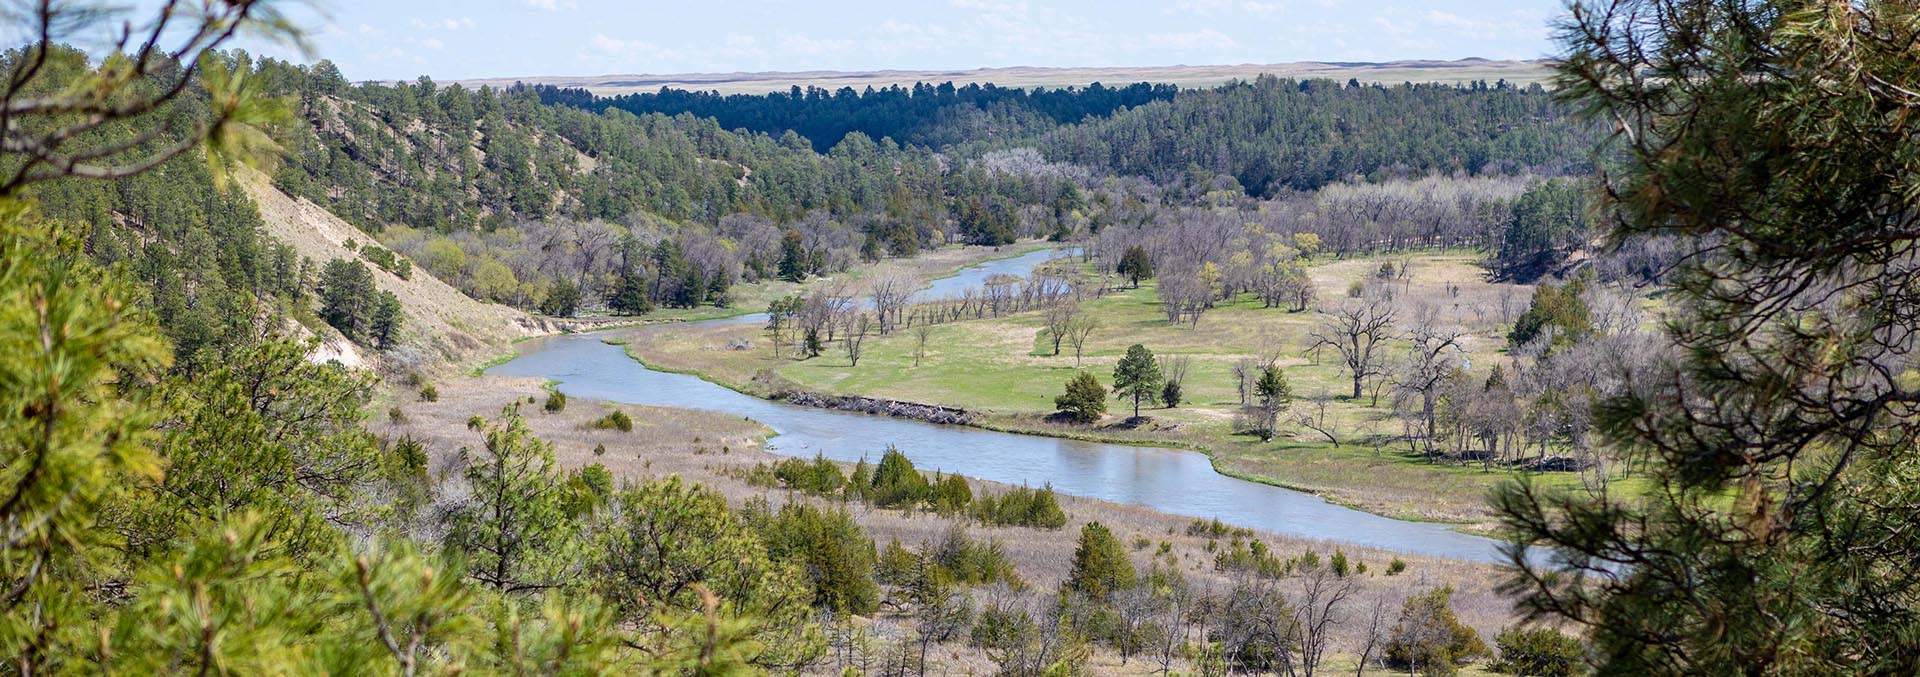 nebraska riverfront property for sale niobrara river refuge